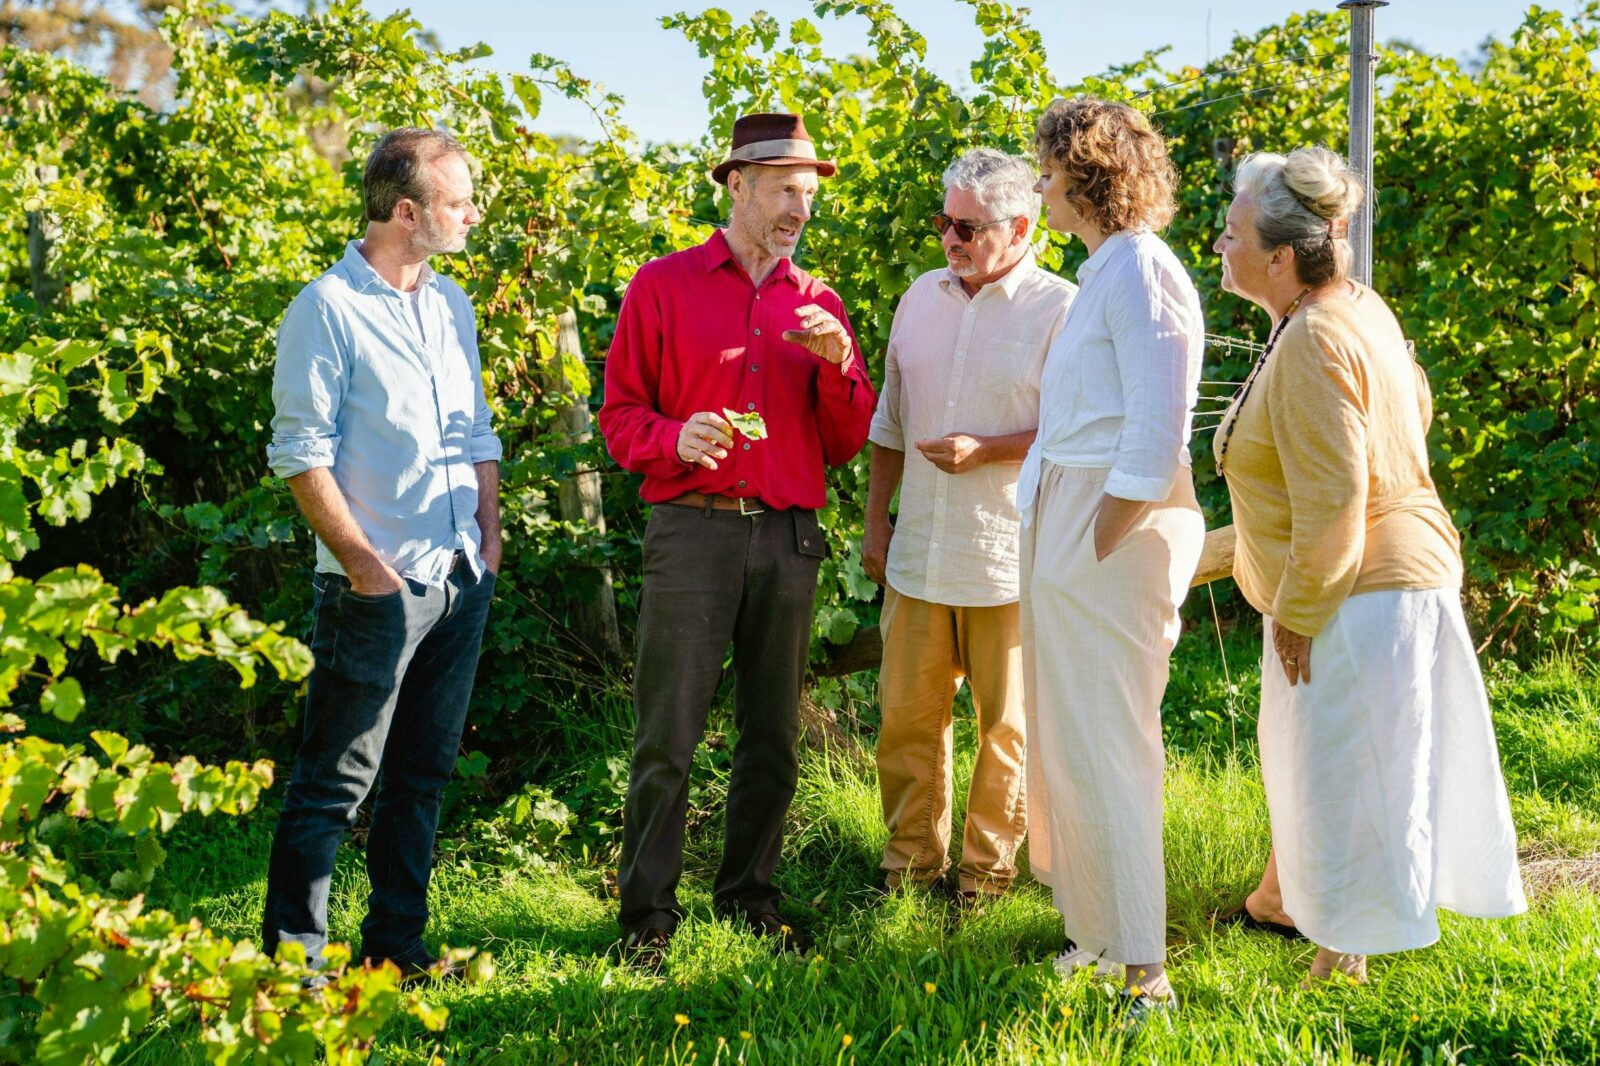 Five people tasting grapes in a vineyard